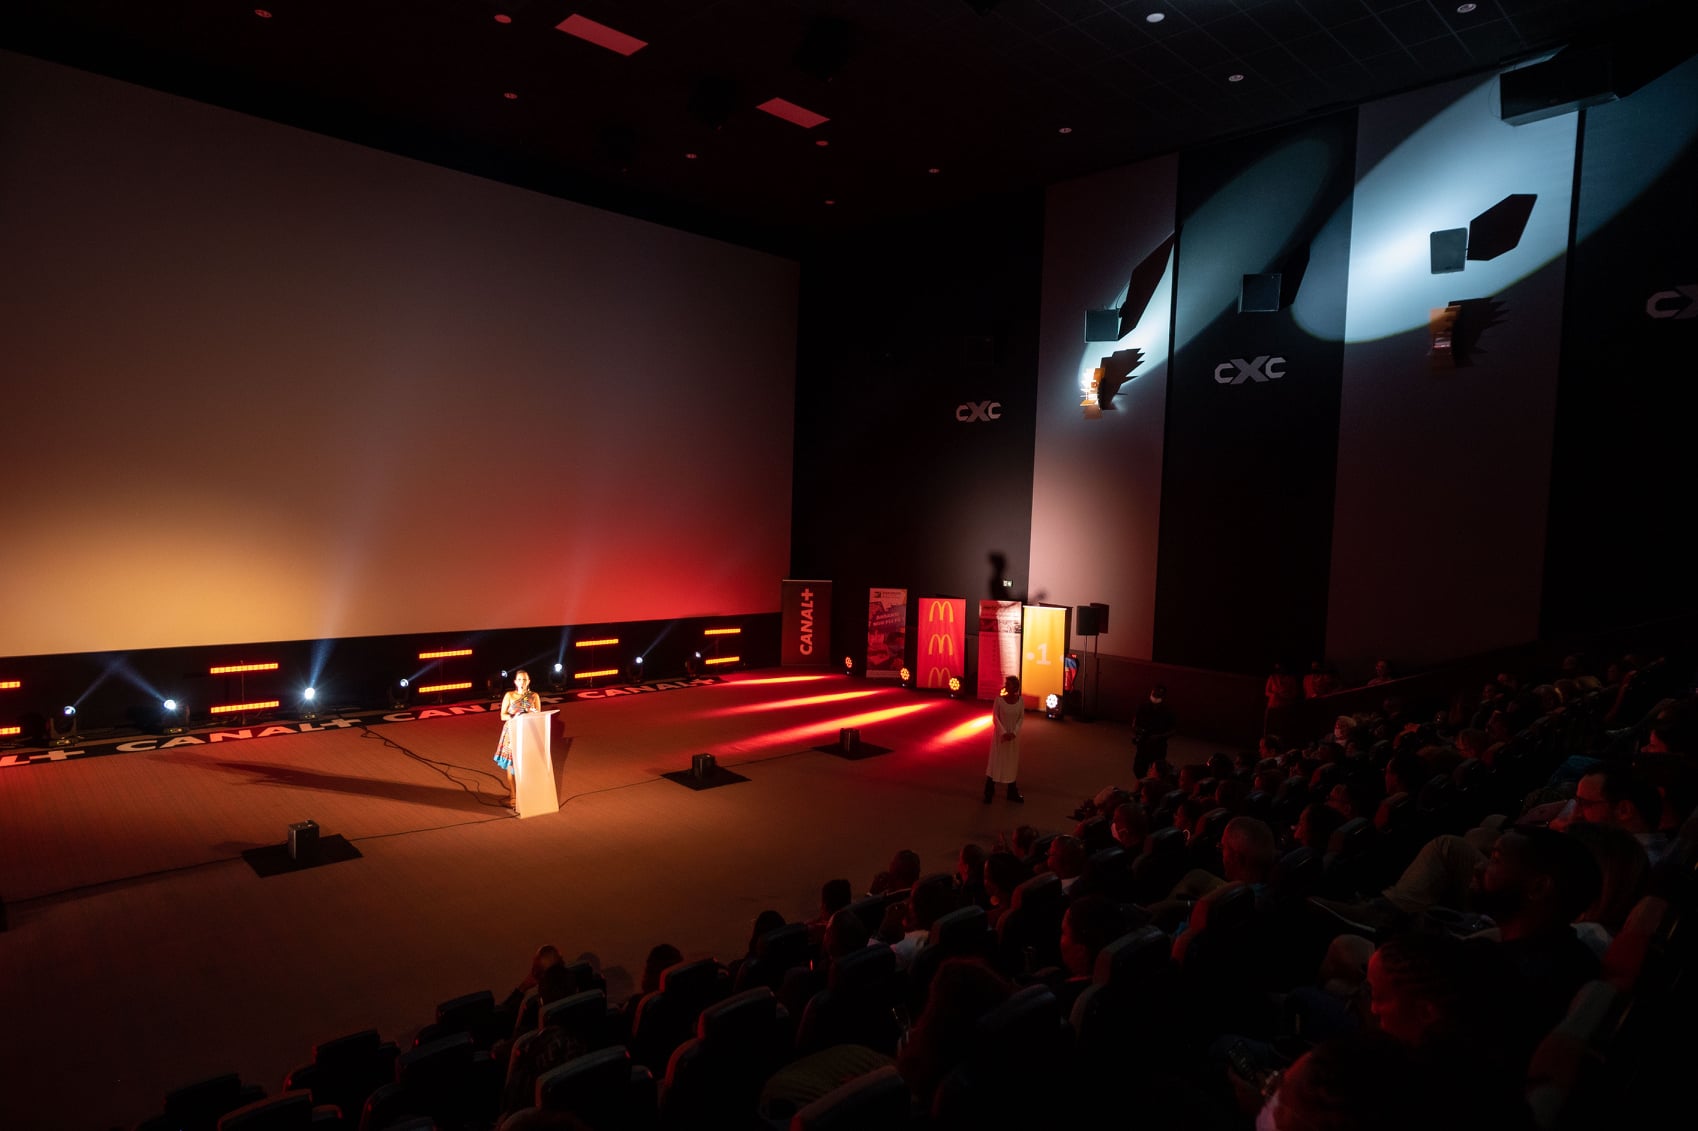     Trois films martiniquais récompensés au Cinestar International Film Festival 2021 en Guadeloupe

